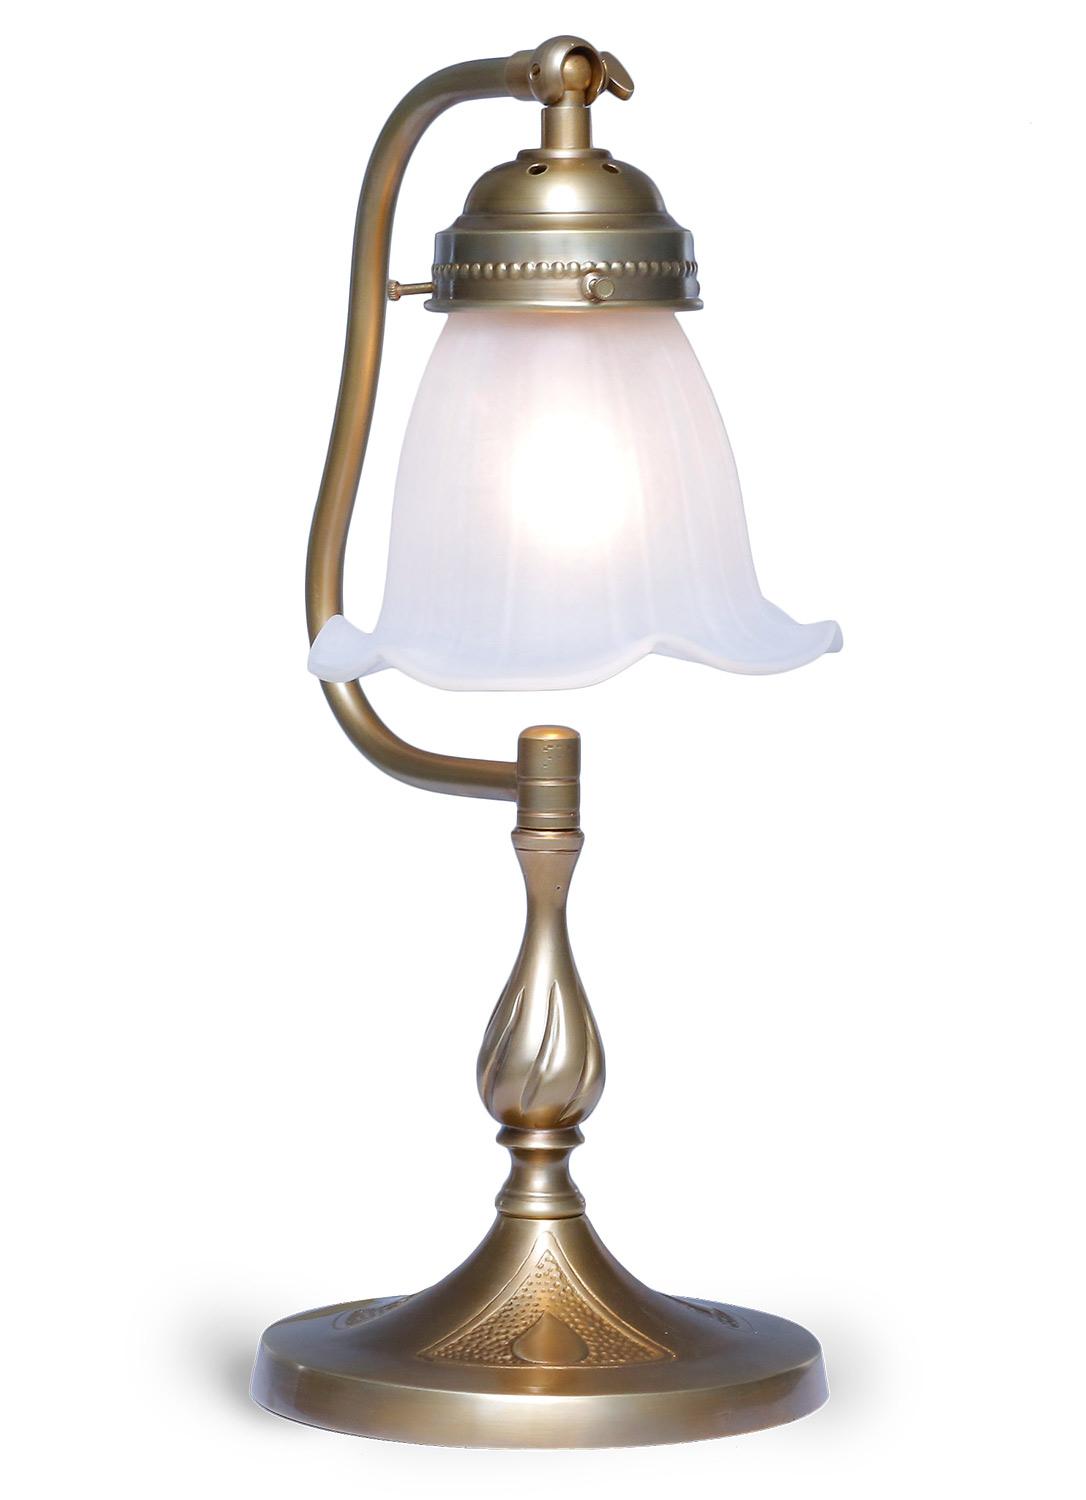 Kleine Jugendstil-Tischleuchte mit verstellbarem Glas, 34 cm: Einstellbare Jugenstil-Tischlampe mit 34 cm Höhe und floralem Glasschirm, hier in Messing antik patiniert